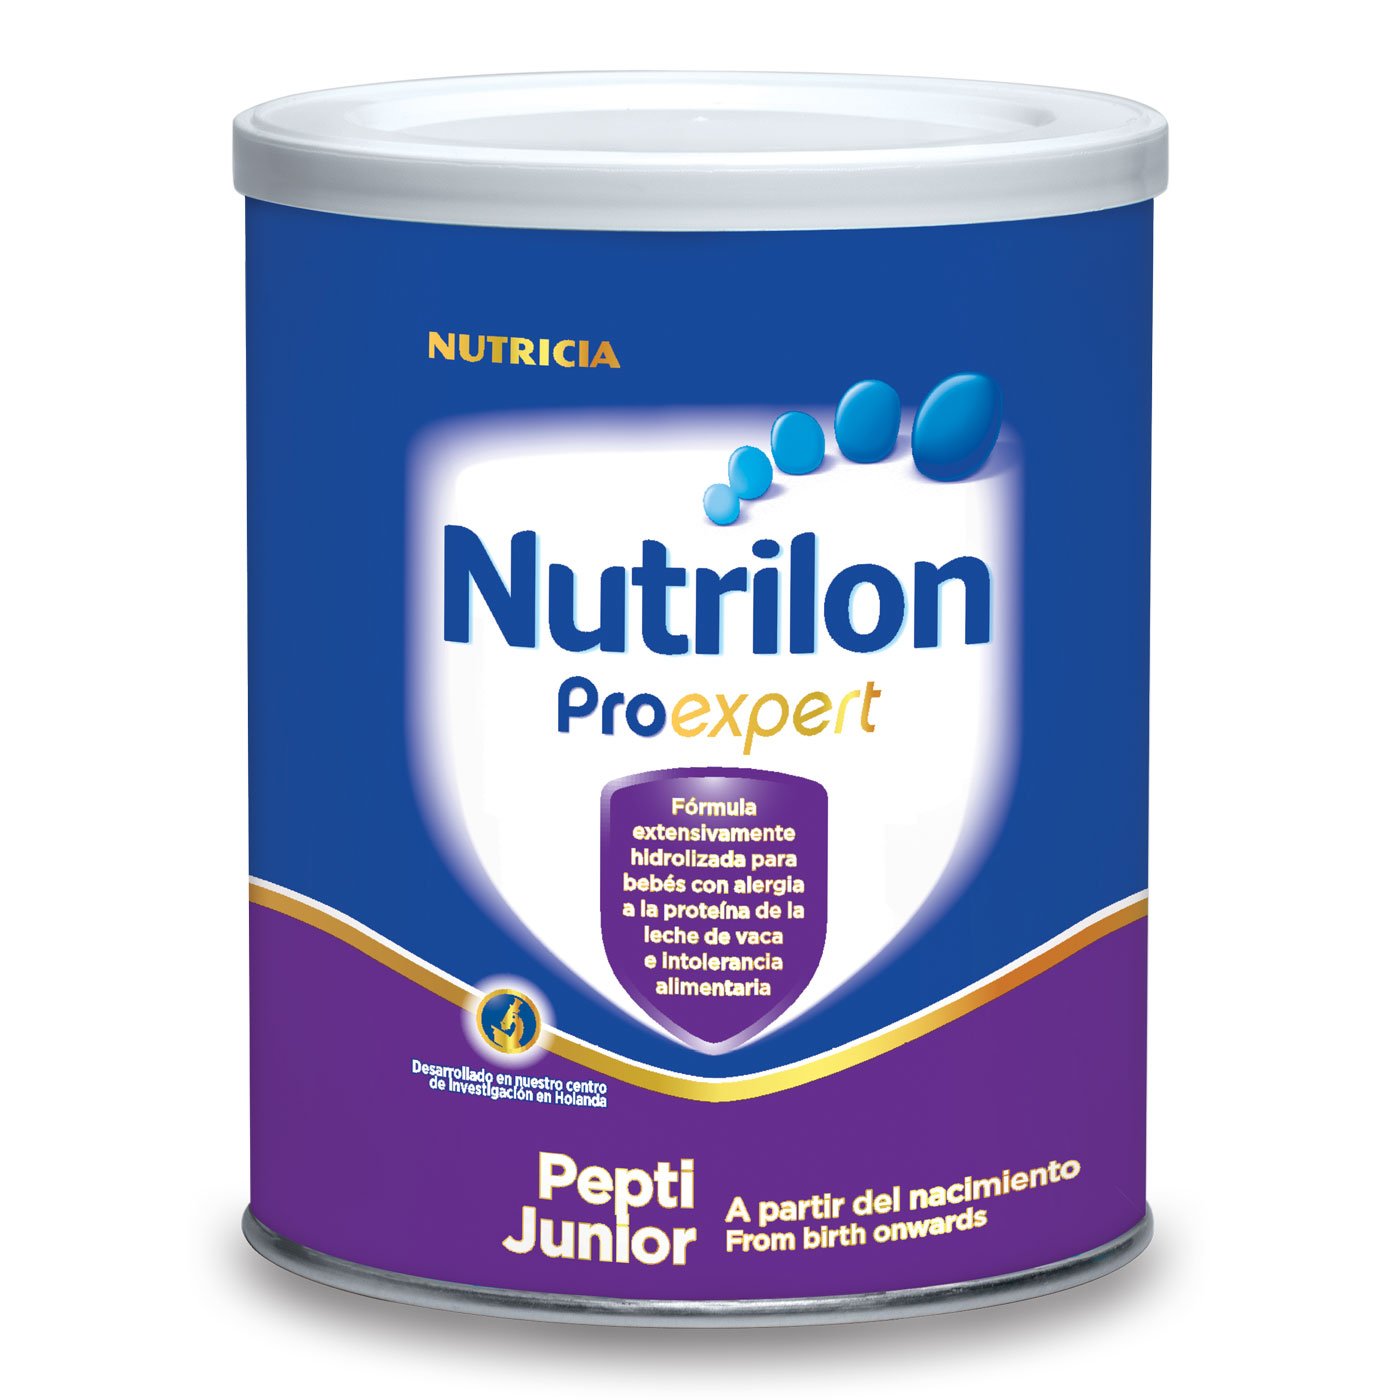 Nutrilon Proexpert Pepti Junior – ECUAQUIMICA